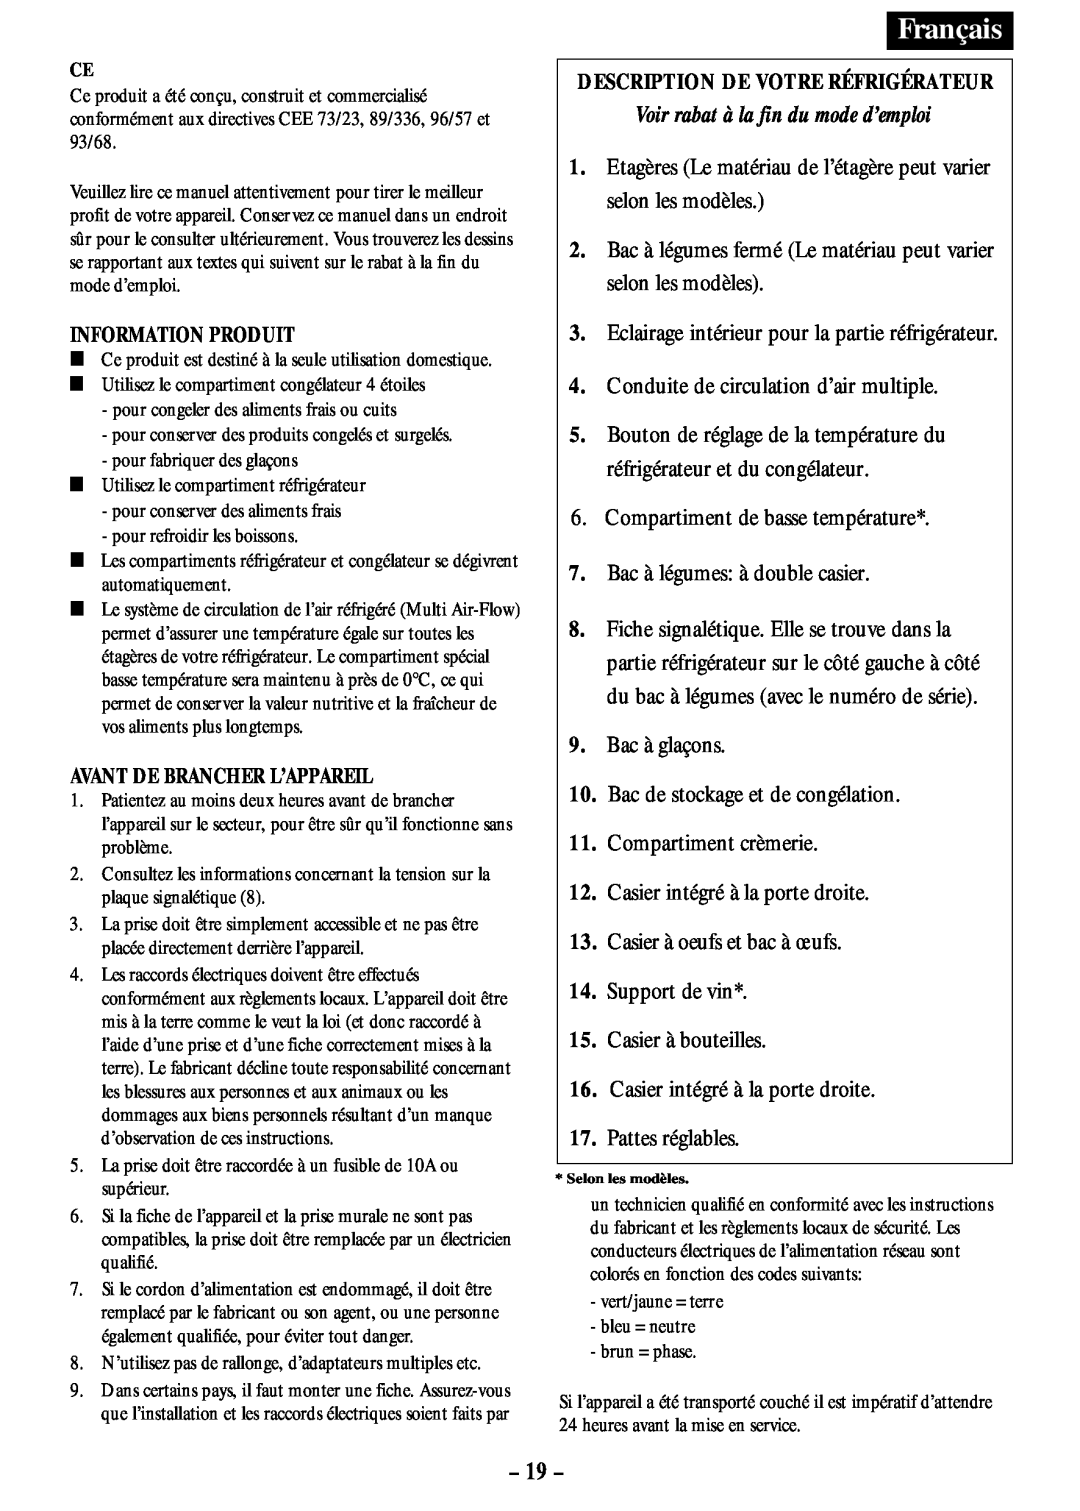 Opteka NF-347, NF1-370, NF1-350 manual 19, Description De Votre Réfrigérateur, Voir rabat à la fin du mode d’emploi, Français 